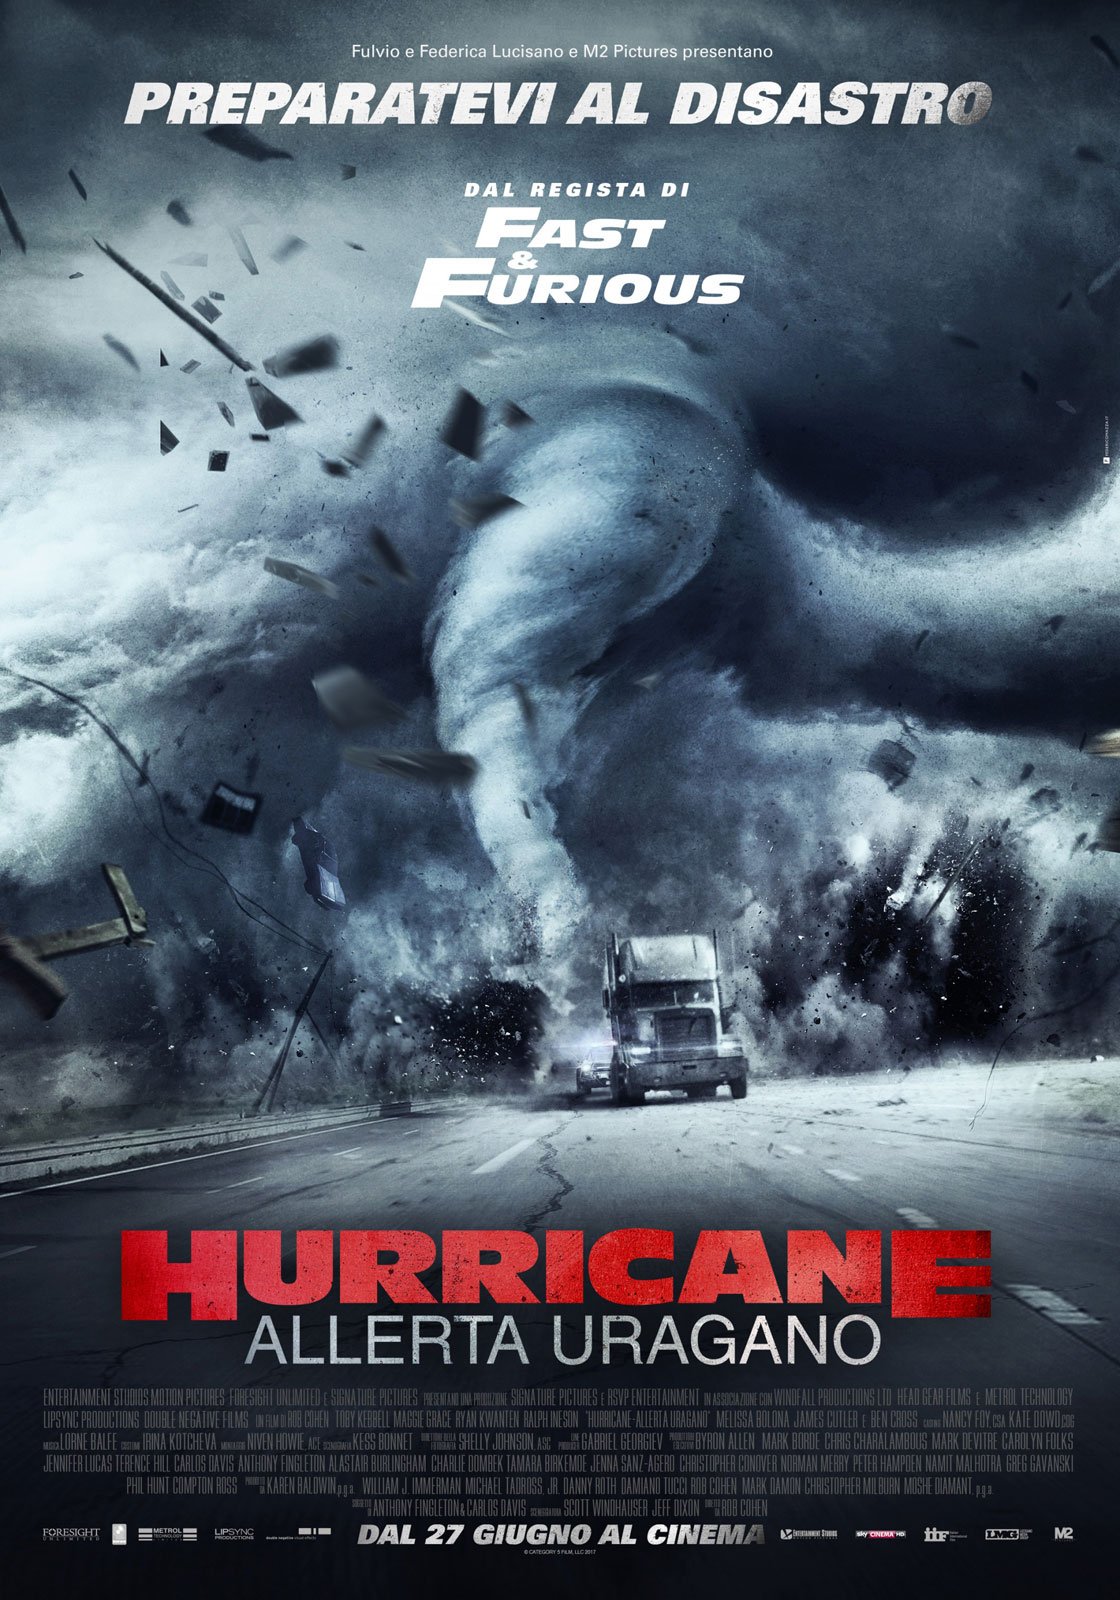 Hurricane : Affiche